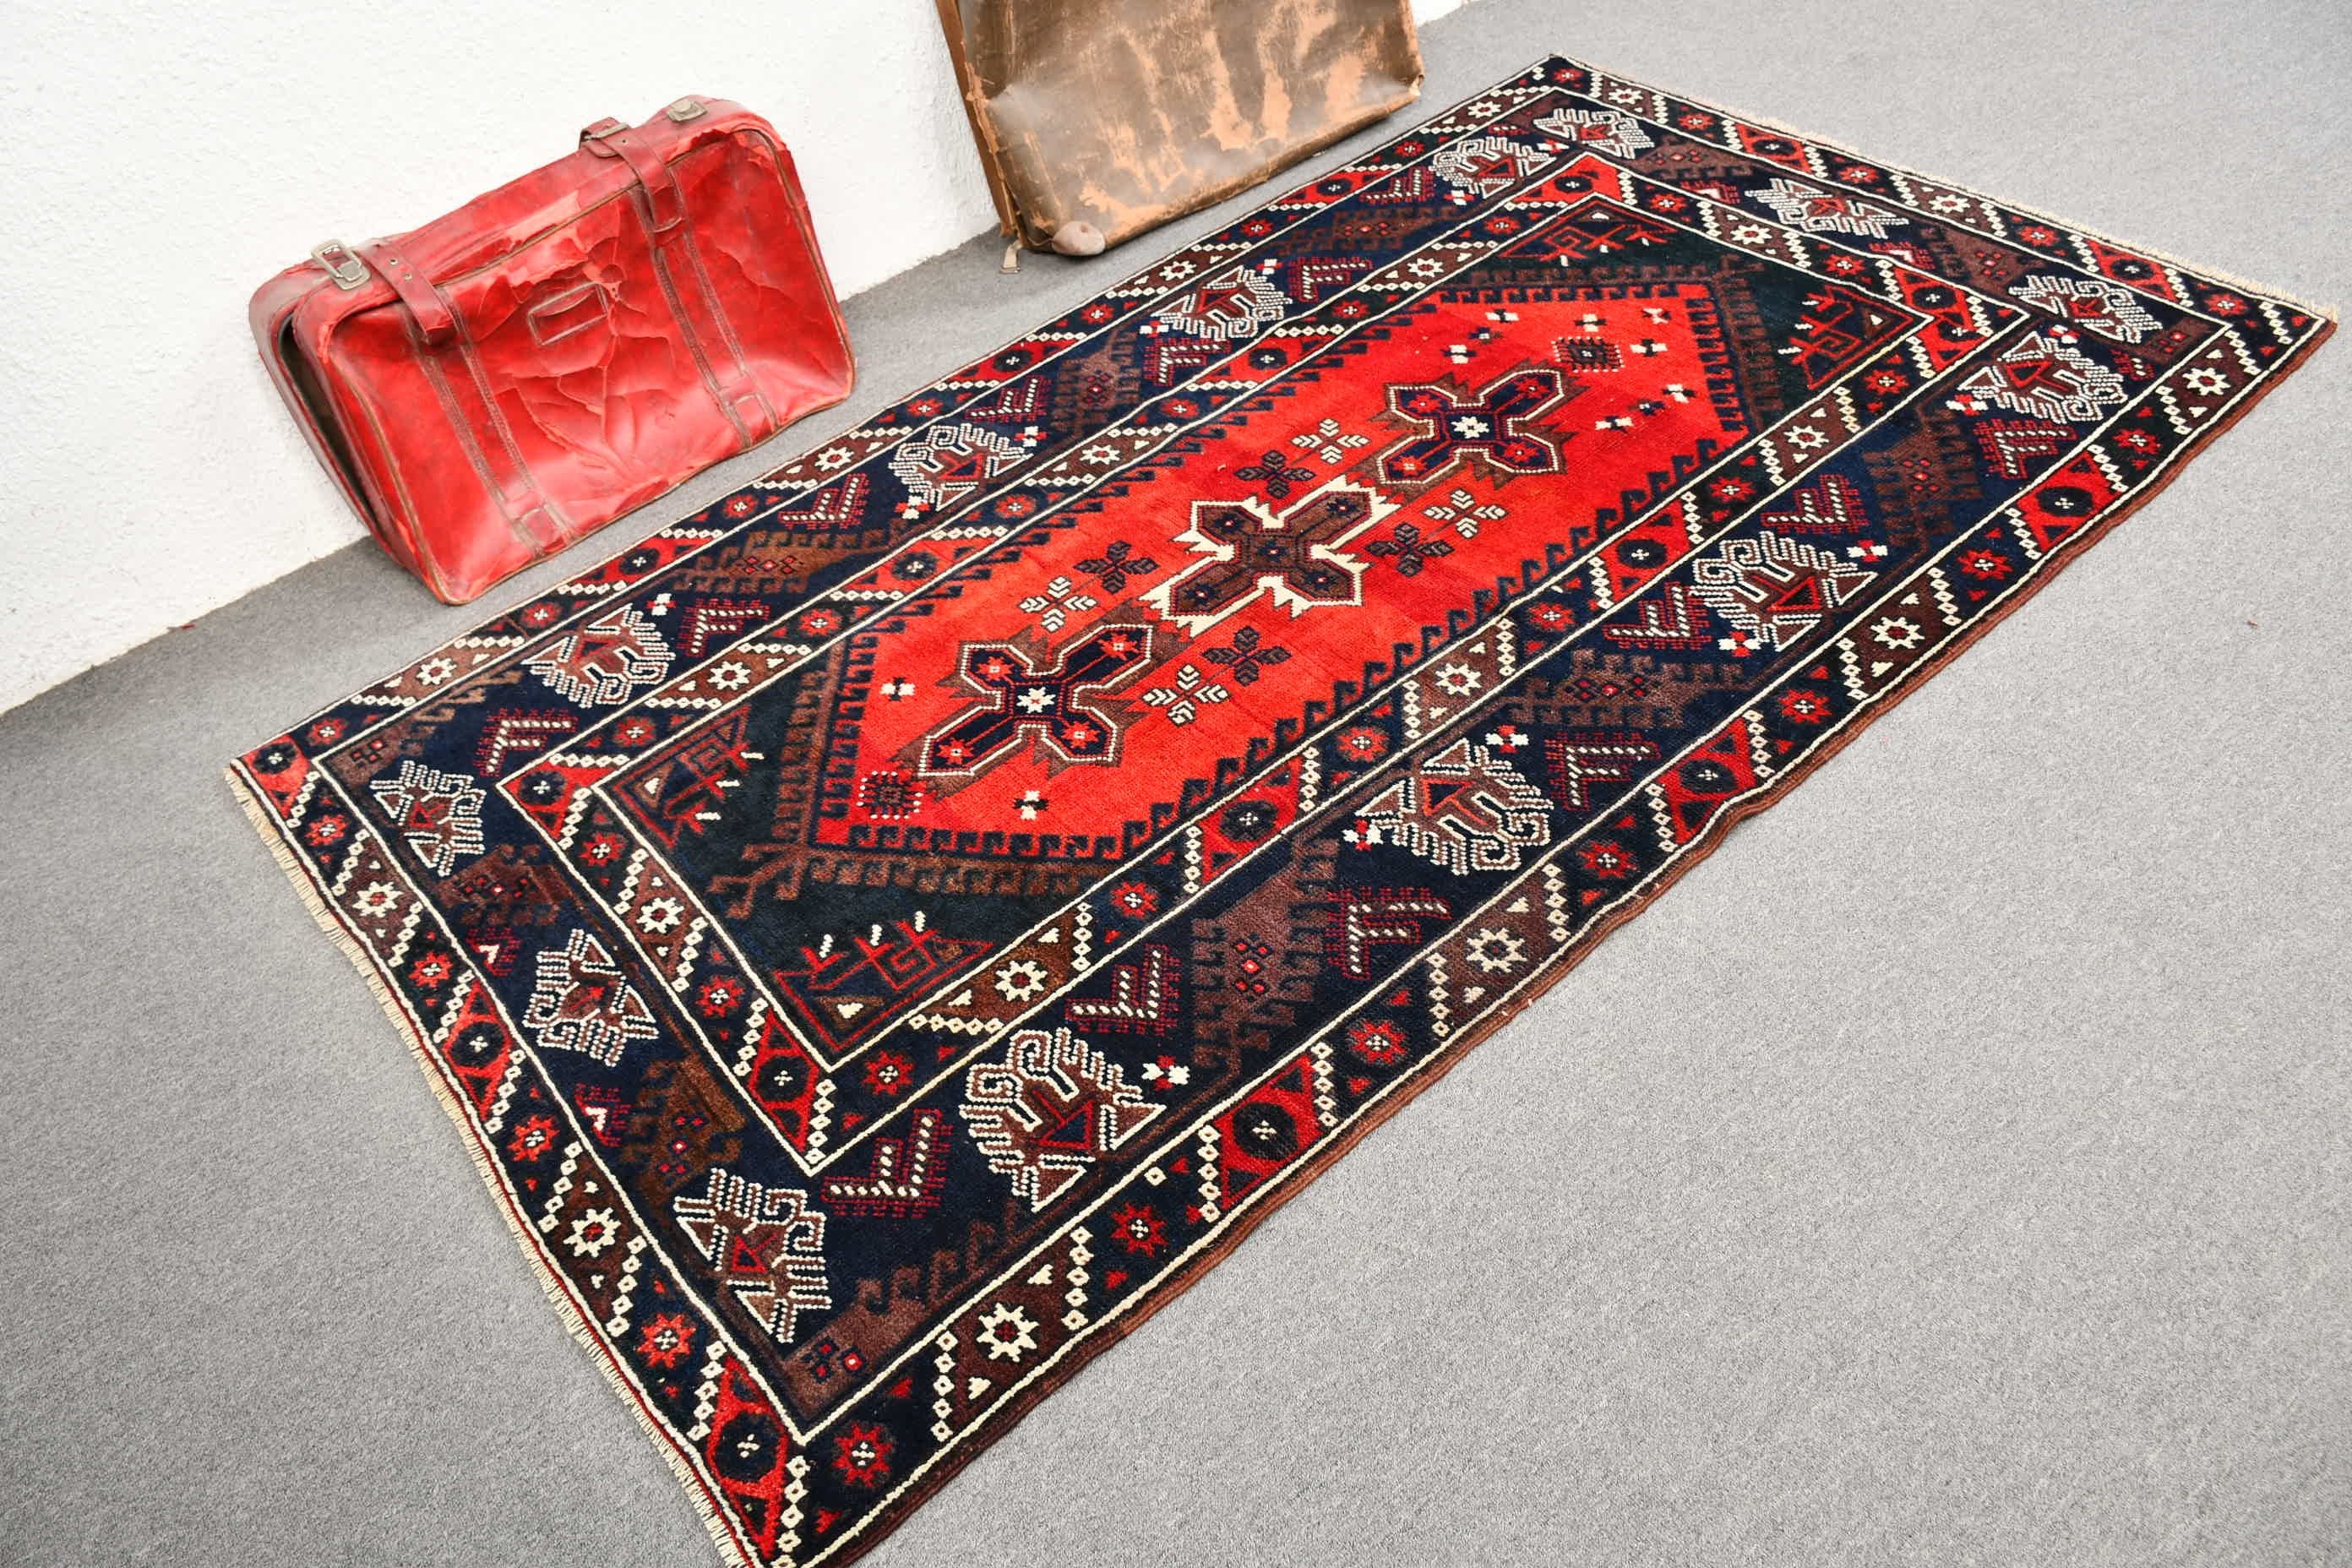 Floor Rug, Bedroom Rugs, Flatweave Rug, Vintage Rug, Blue Moroccan Rug, Rugs for Indoor, Cool Rug, Turkish Rug, 4.3x7.4 ft Area Rugs